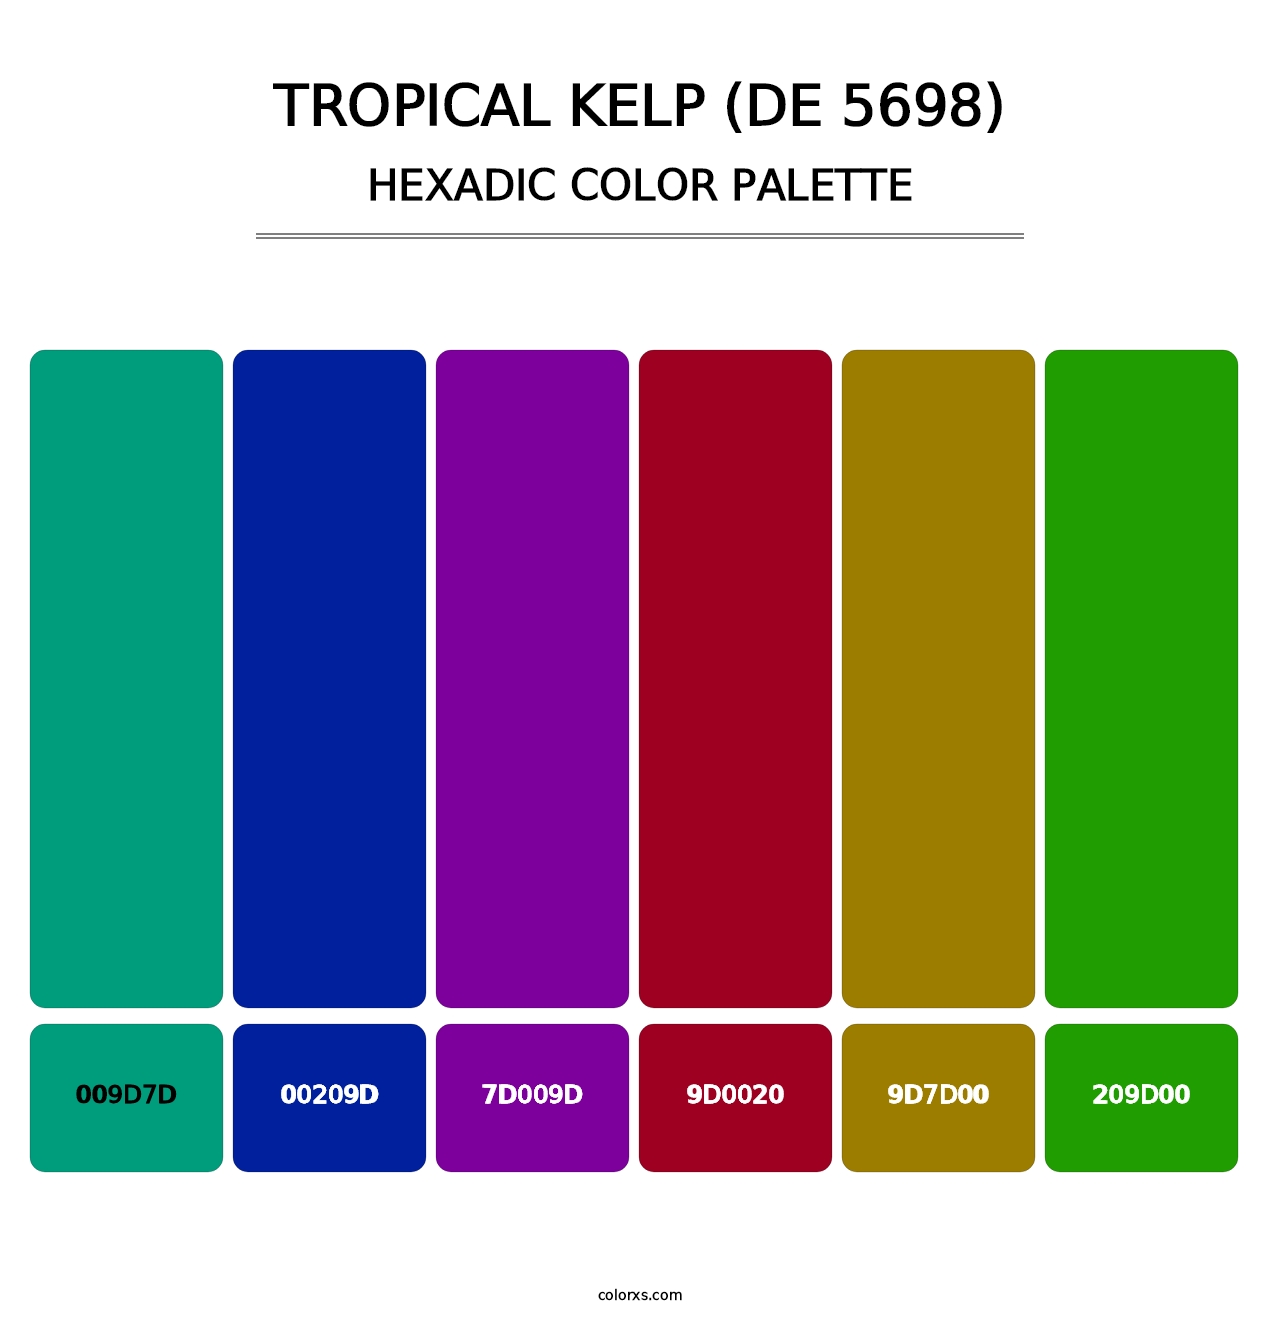 Tropical Kelp (DE 5698) - Hexadic Color Palette